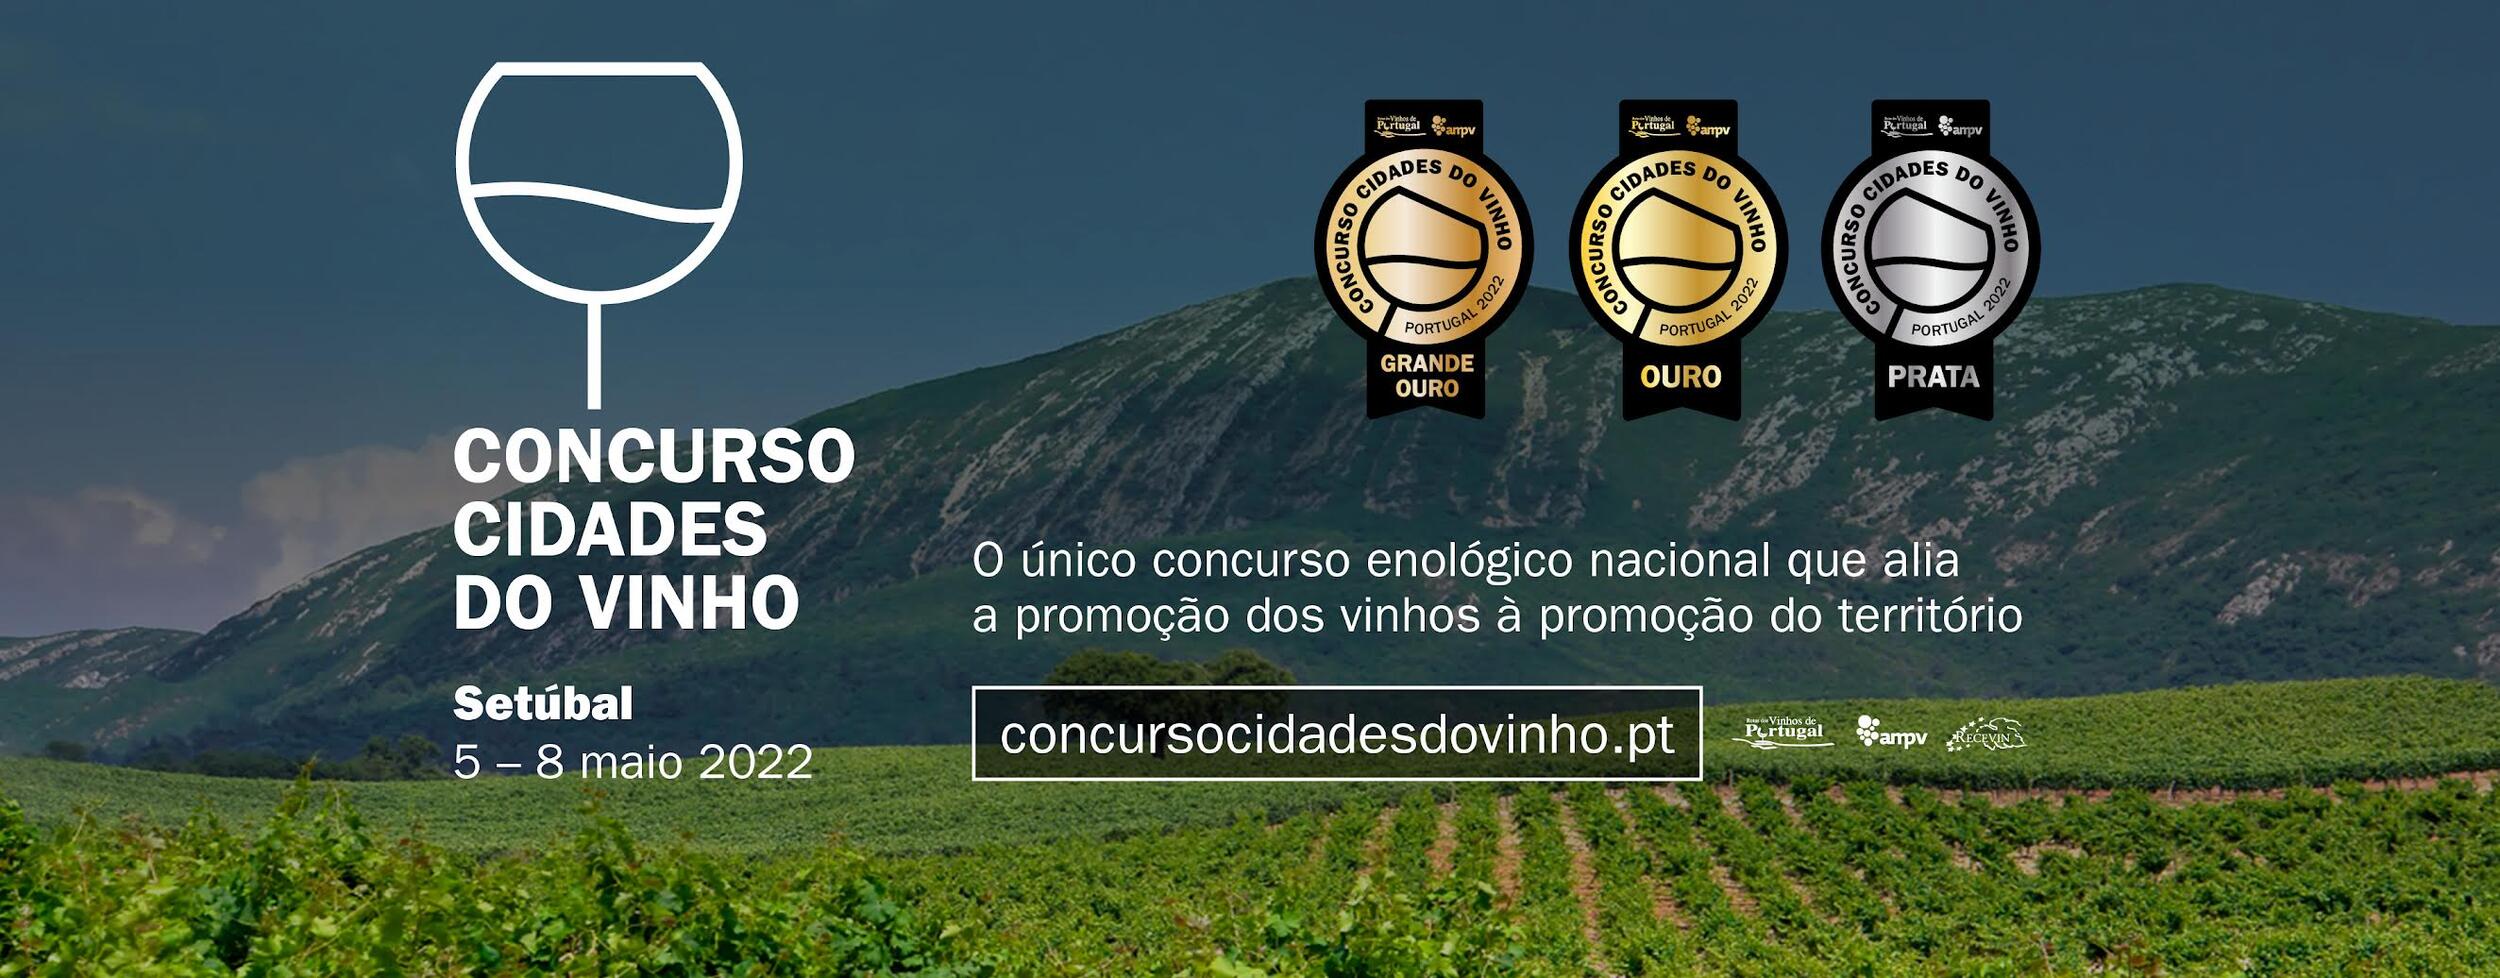 Produtores do concelho em destaque no Concurso Cidades do Vinho Portugal